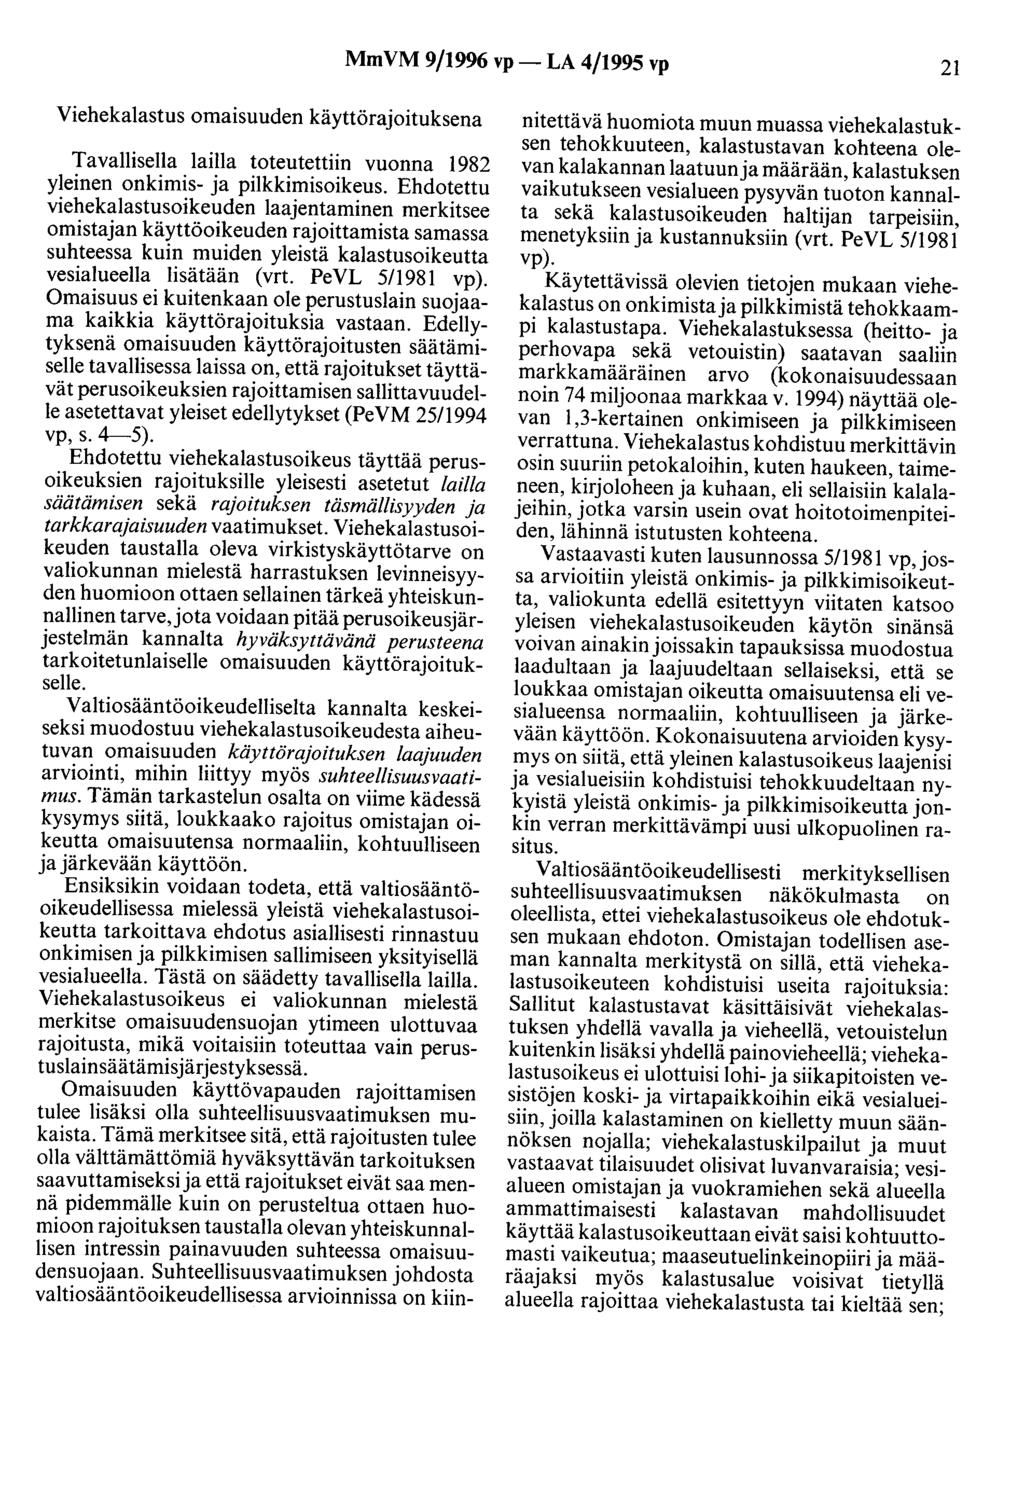 MmVM 9/1996 vp- LA 4/1995 vp 21 Viehekalastus omaisuuden käyttörajoituksena Tavallisella lailla toteutettiin vuonna 1982 yleinen onkimis- ja pilkkimisoikeus.